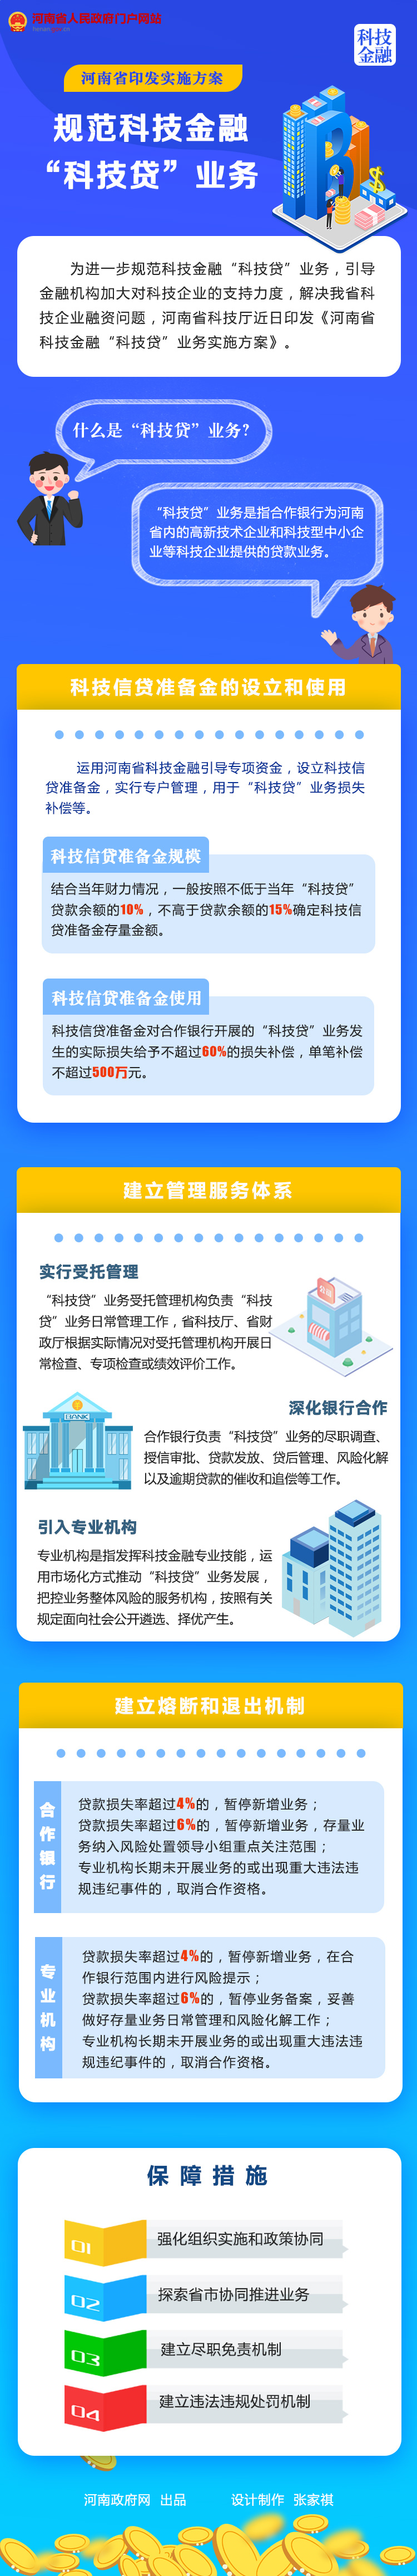 图解丨河南省印发实施方案 规范科技金融“科技贷”业务